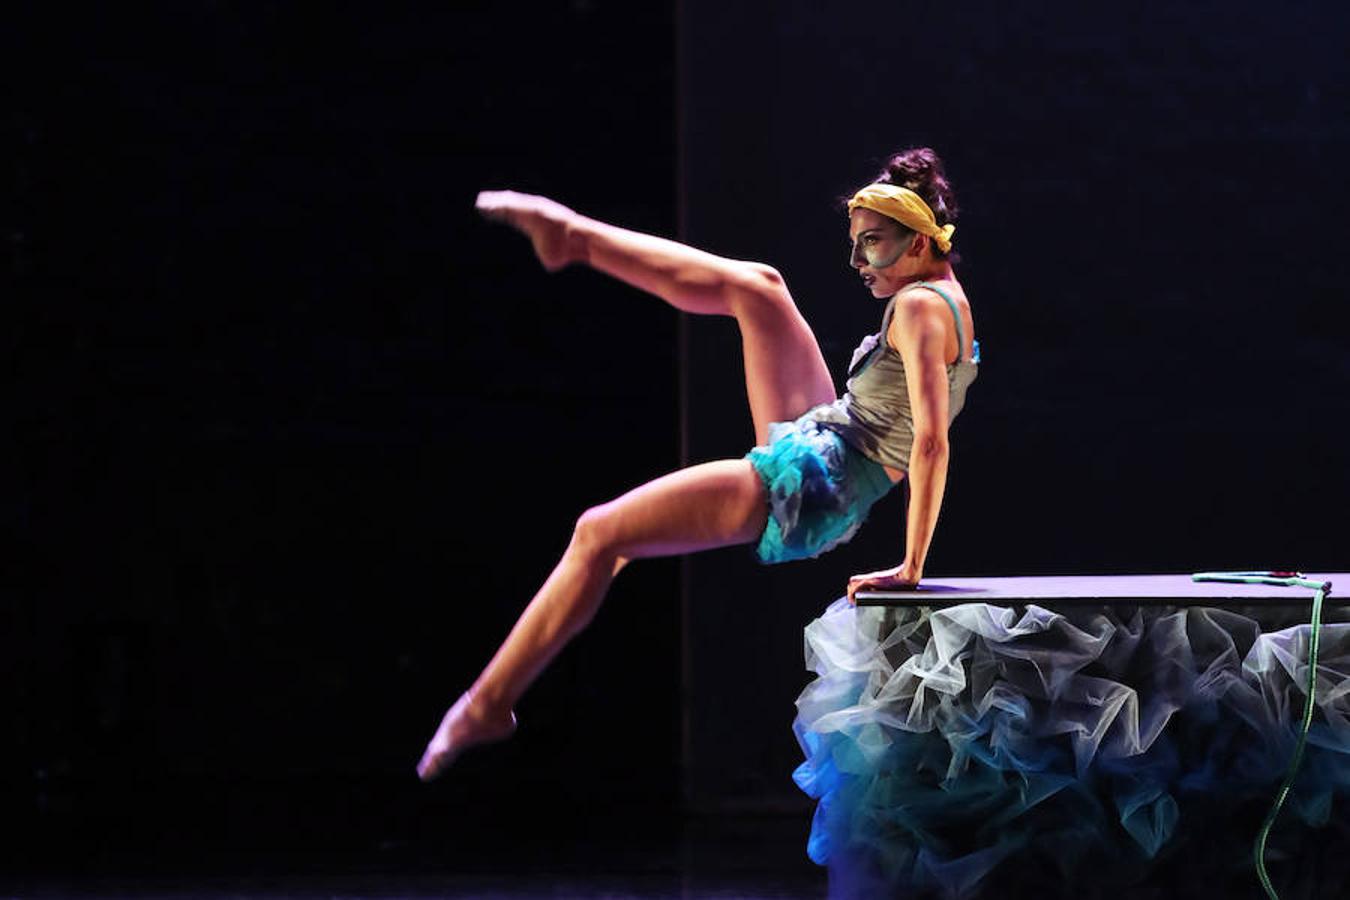 La obra de danza 'Alicia' se ha presentado este miércoles en Santiago, Chile. A sido Mathieu Guilhaumon, coreógrafo y director artístico del Ballet Nacional Chileno, quien ha ideado esta obra inspirada en el famoso cuento de Lewis Carroll, 'Alicia en el País de Maravillas'. 